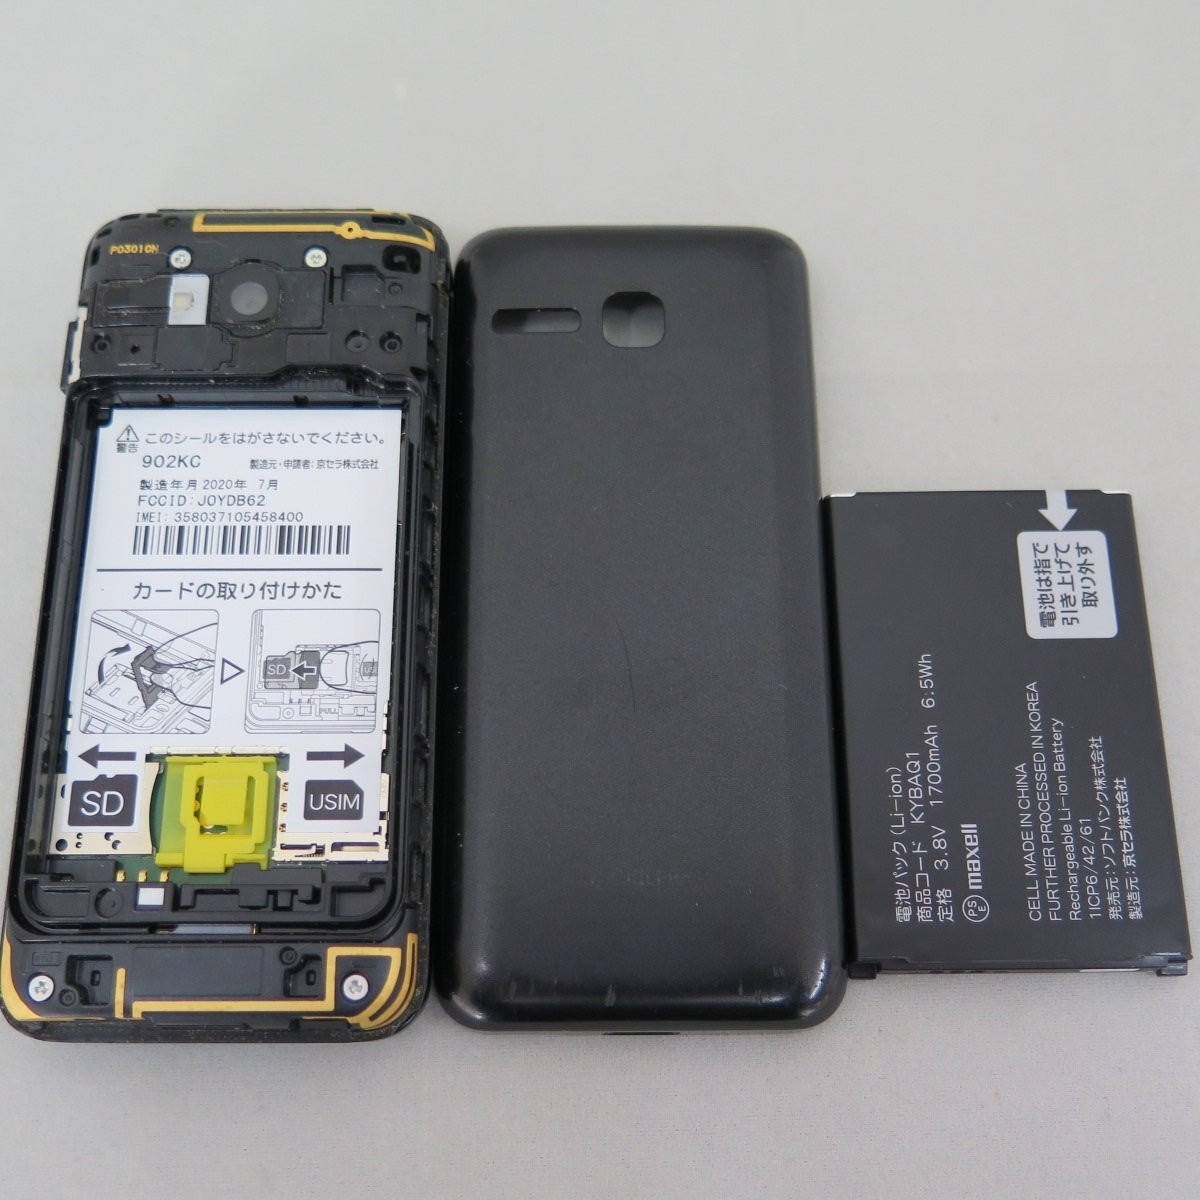 1 иен старт SoftBank DIGNO мобильный телефон 3 902KC черный утиль 